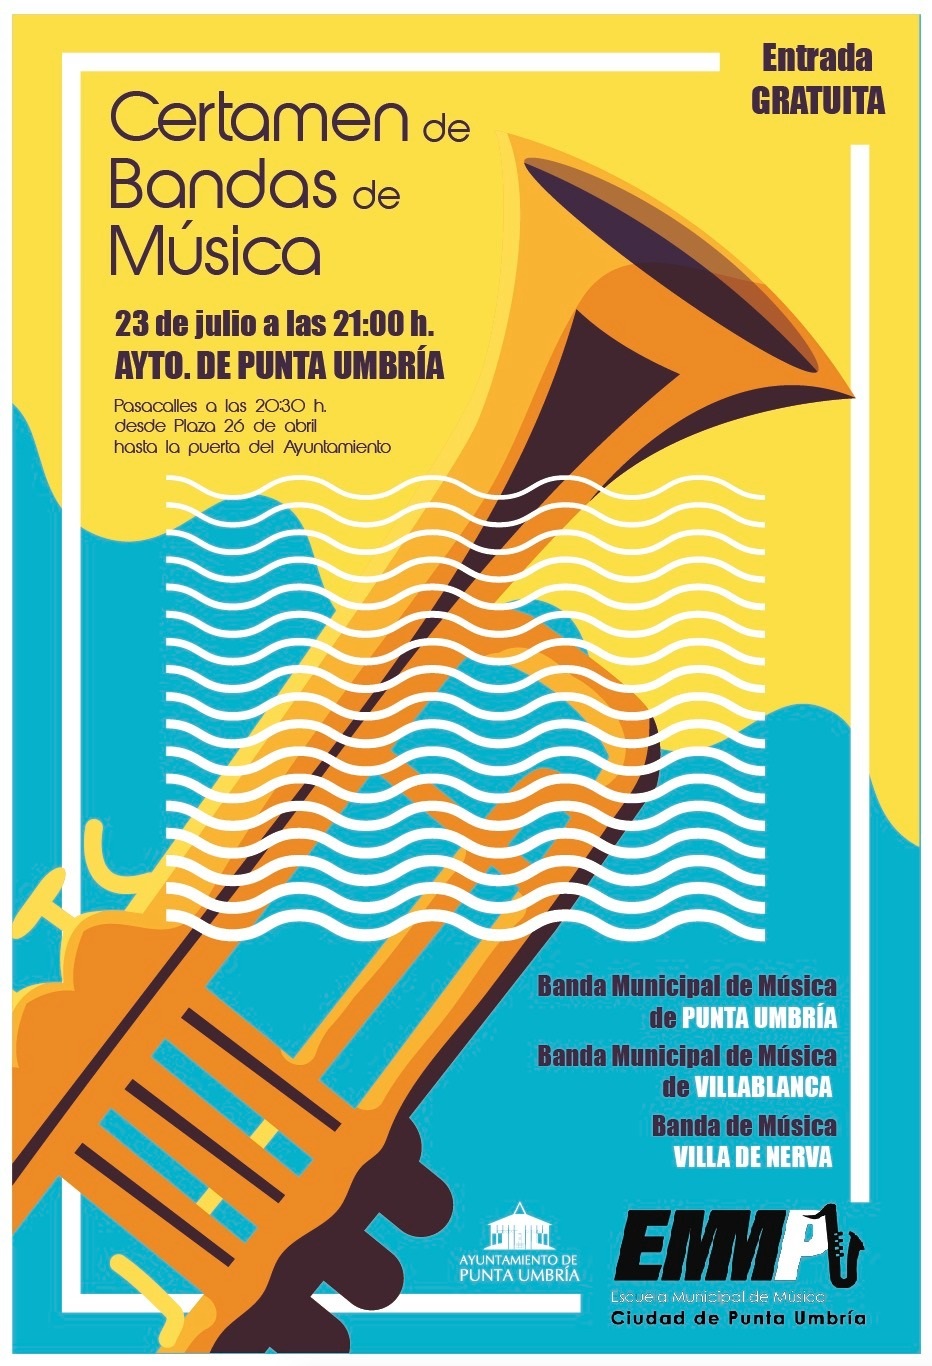 La Escuela Municipal de Música de Punta Umbría organiza este sábado el XVIII Festival de Bandas